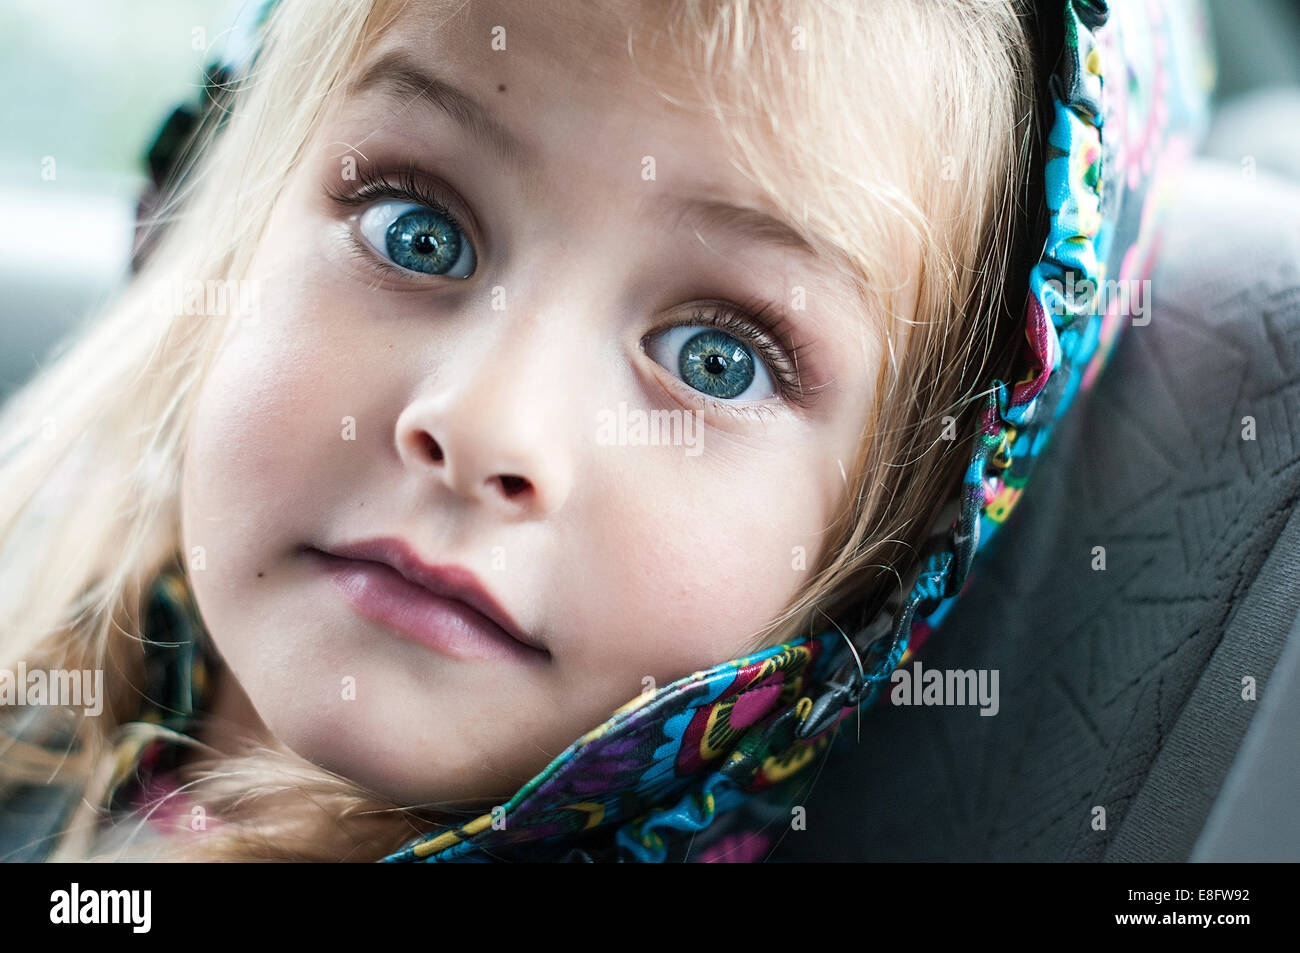 Portrait de petite fille avec l'expression surprise sur son visage Banque D'Images